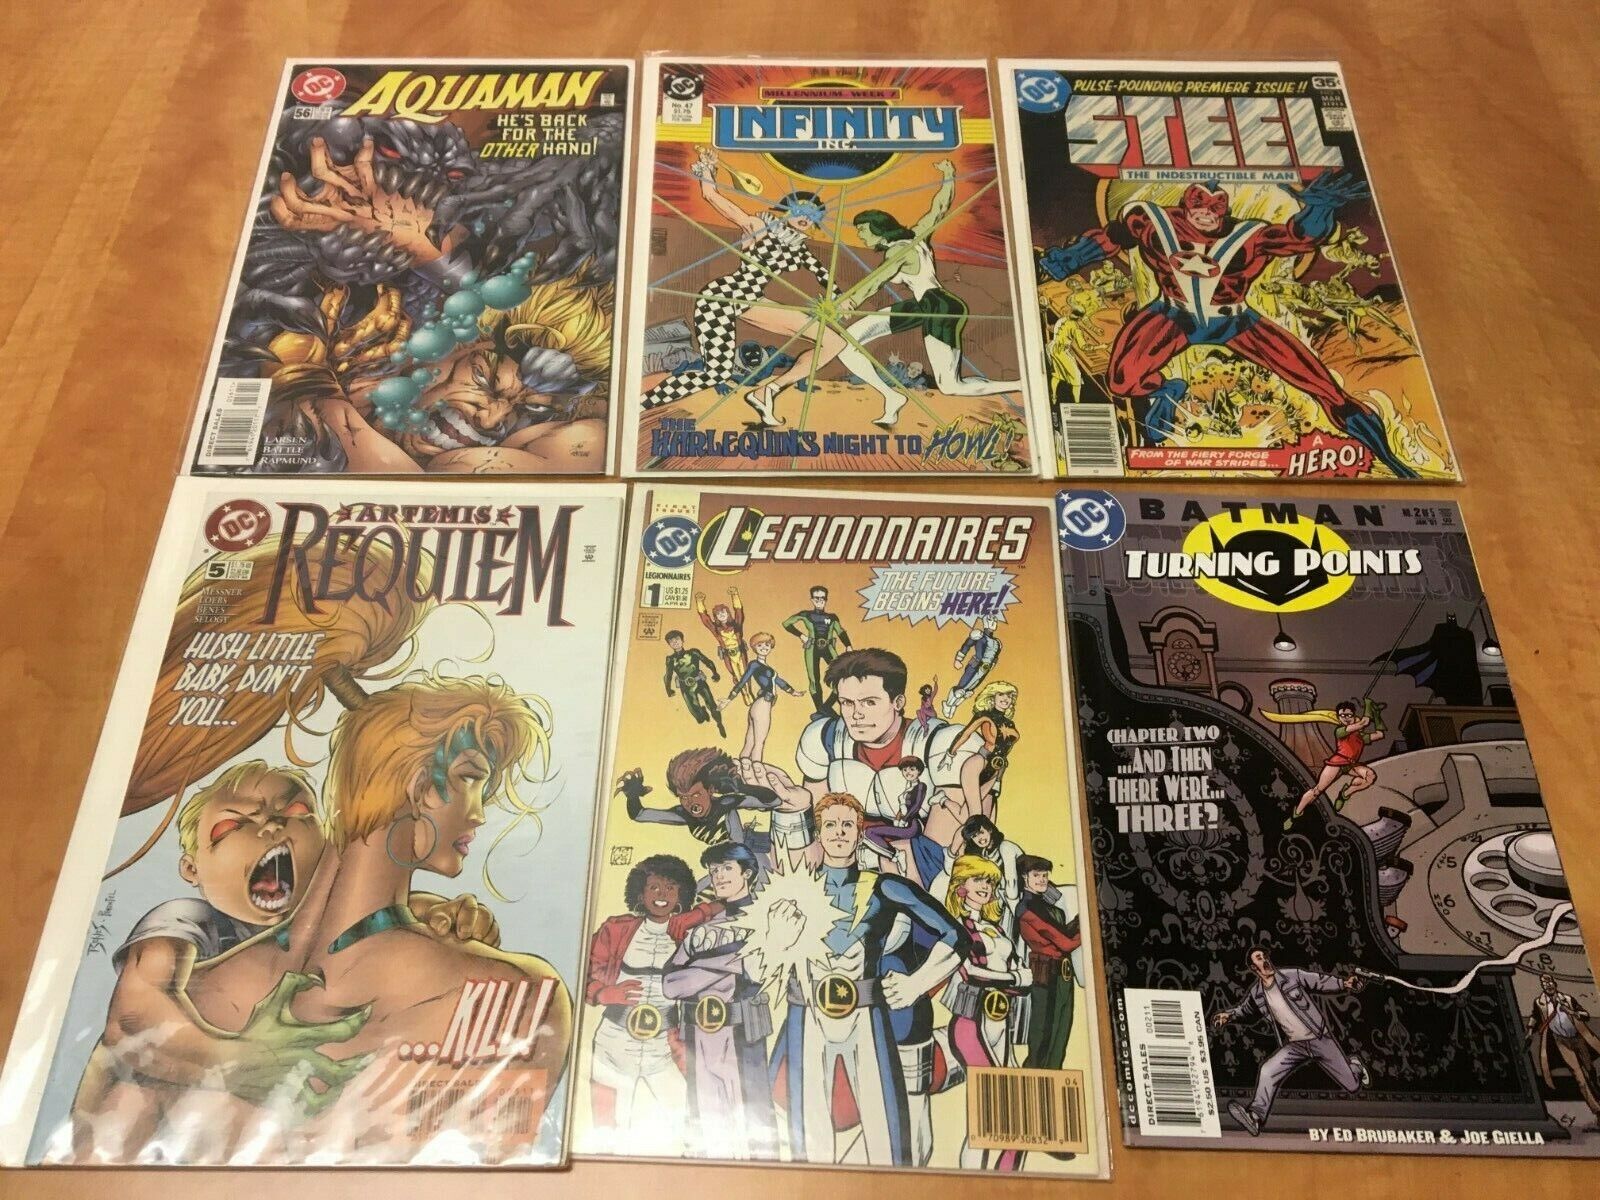 DC Comics Mixed Lot of 6 Aquaman #56 Infinity #47 Steel #1 Legionnaires #1 